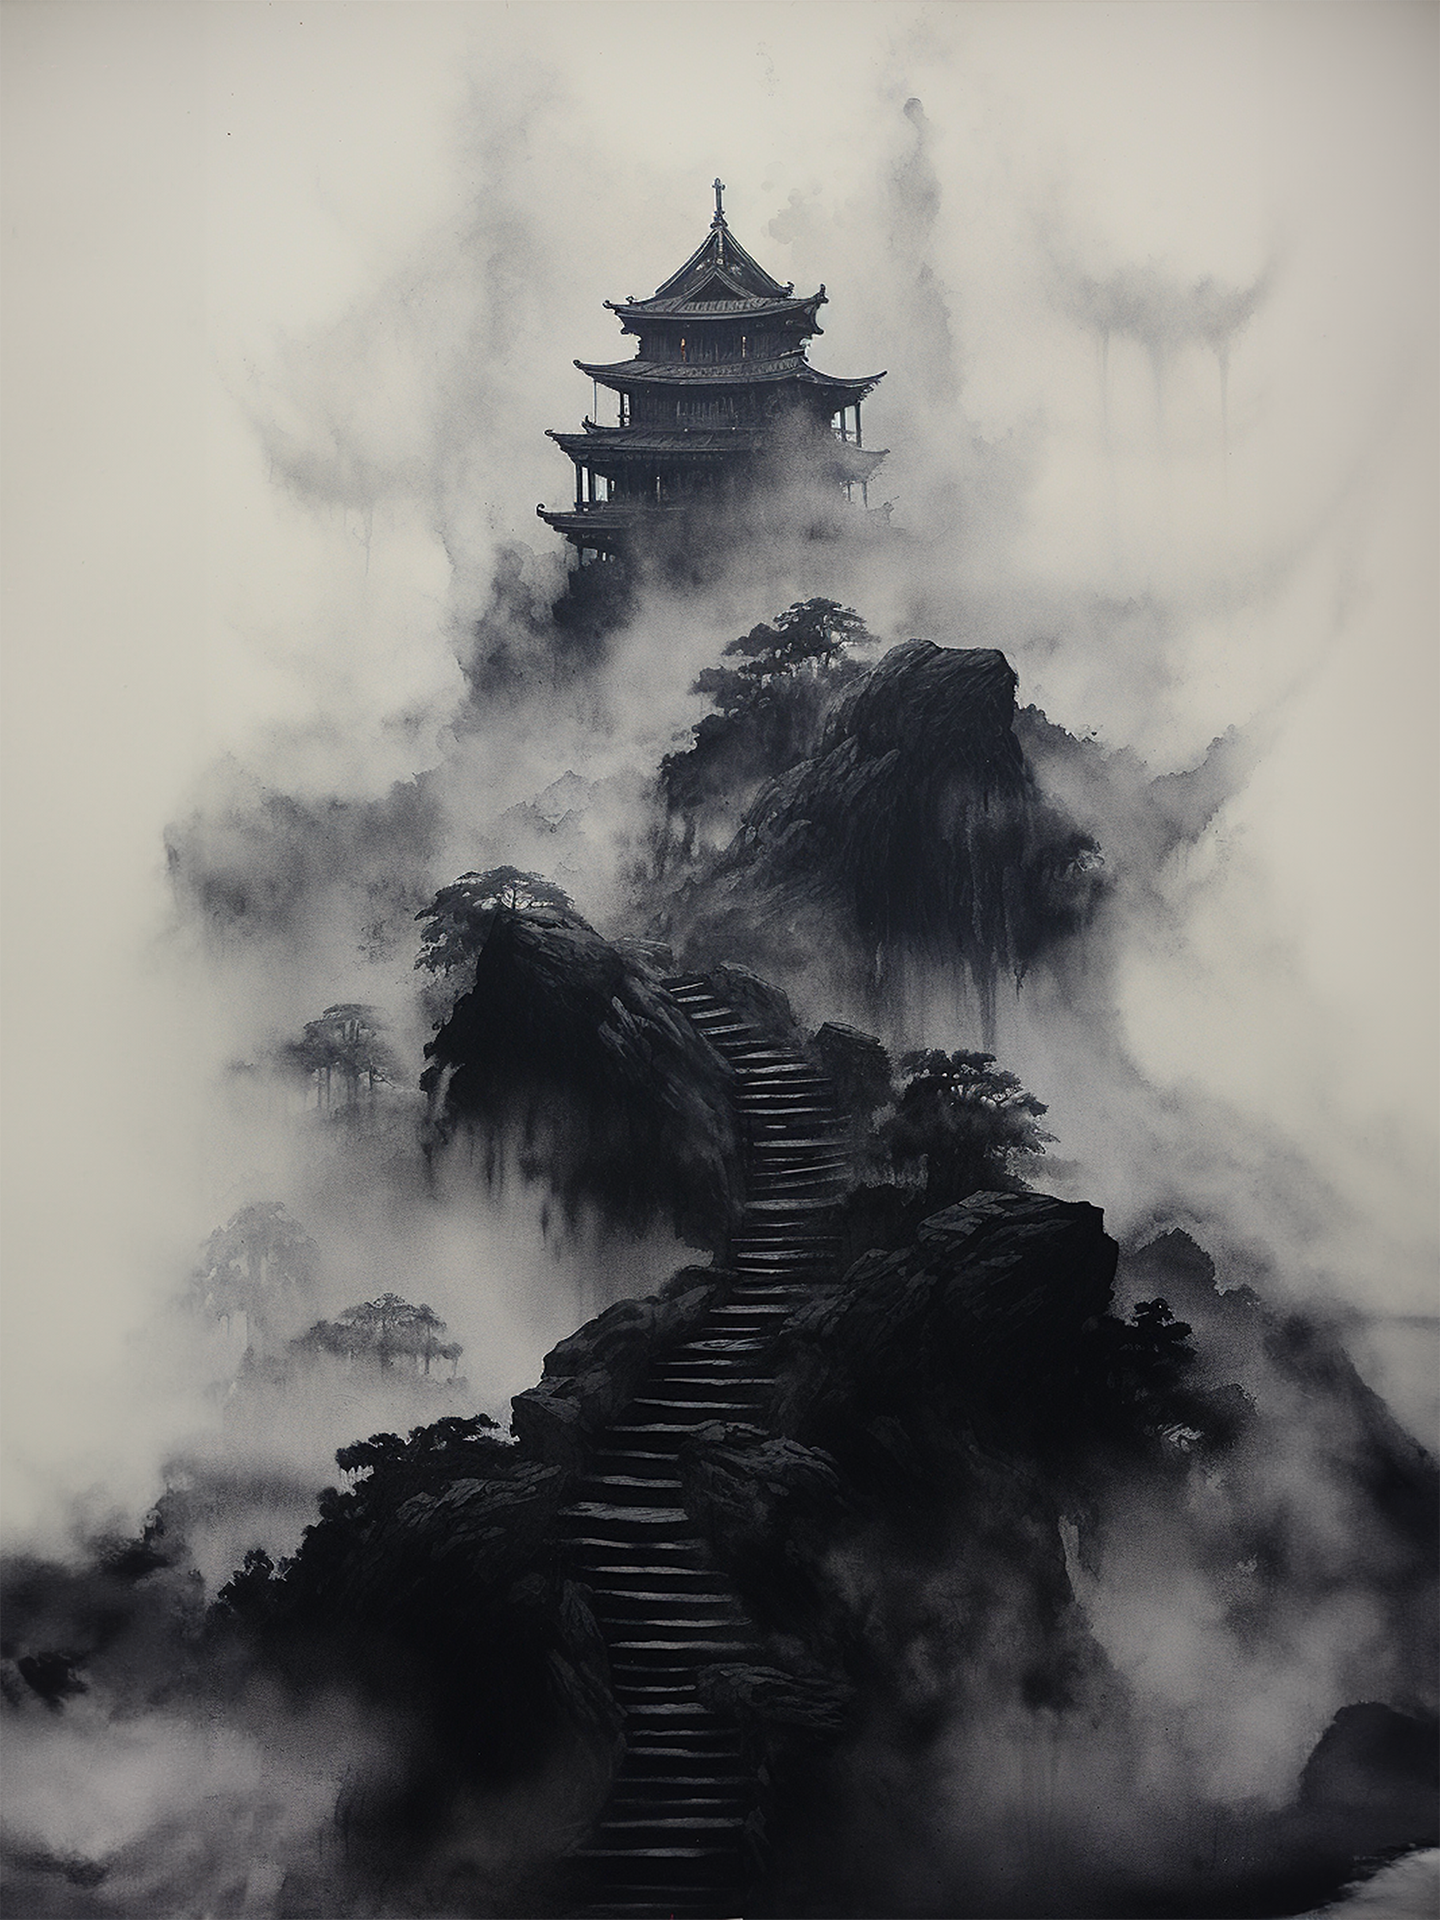 Le tableau en noir et blanc montre une pagode ancienne perchée sur des pics brumeux, évoquant un paysage asiatique mystique.